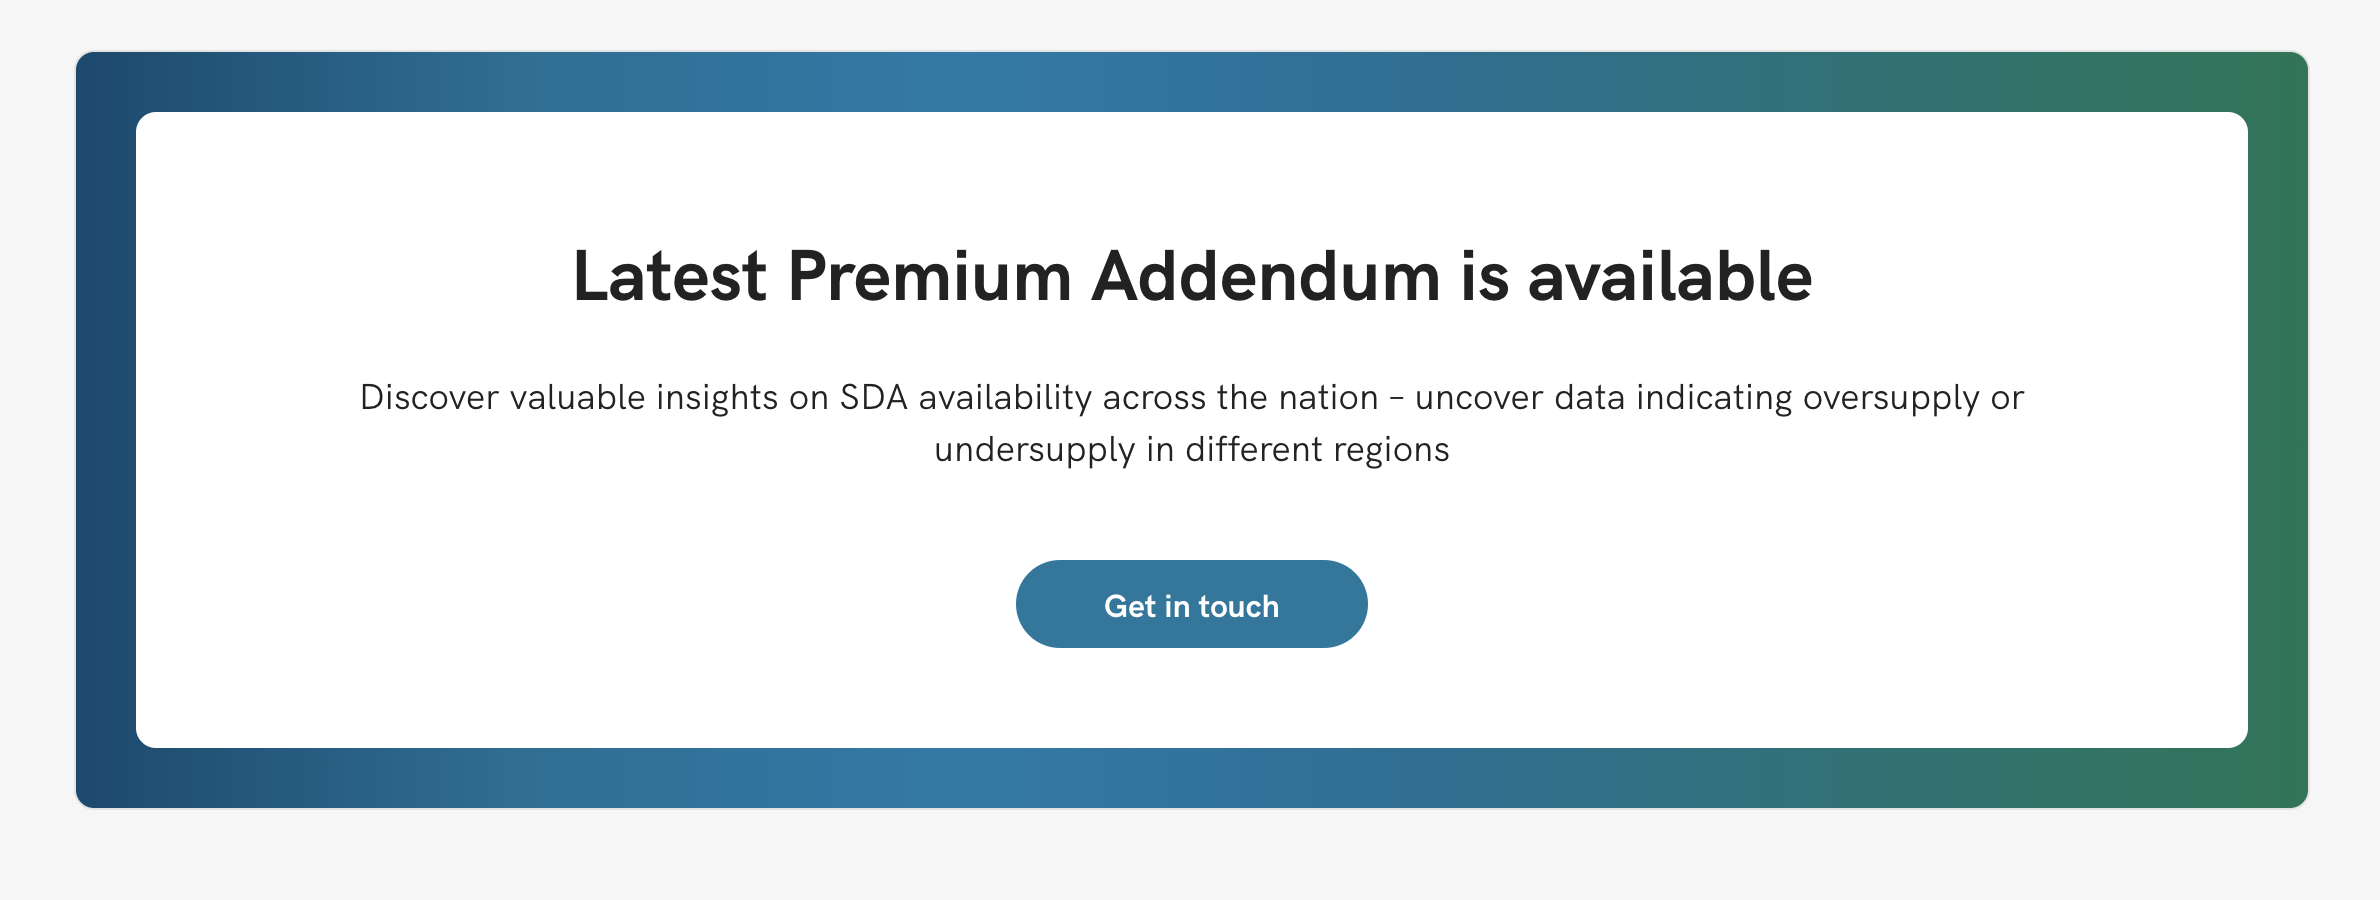 Premium Addendum